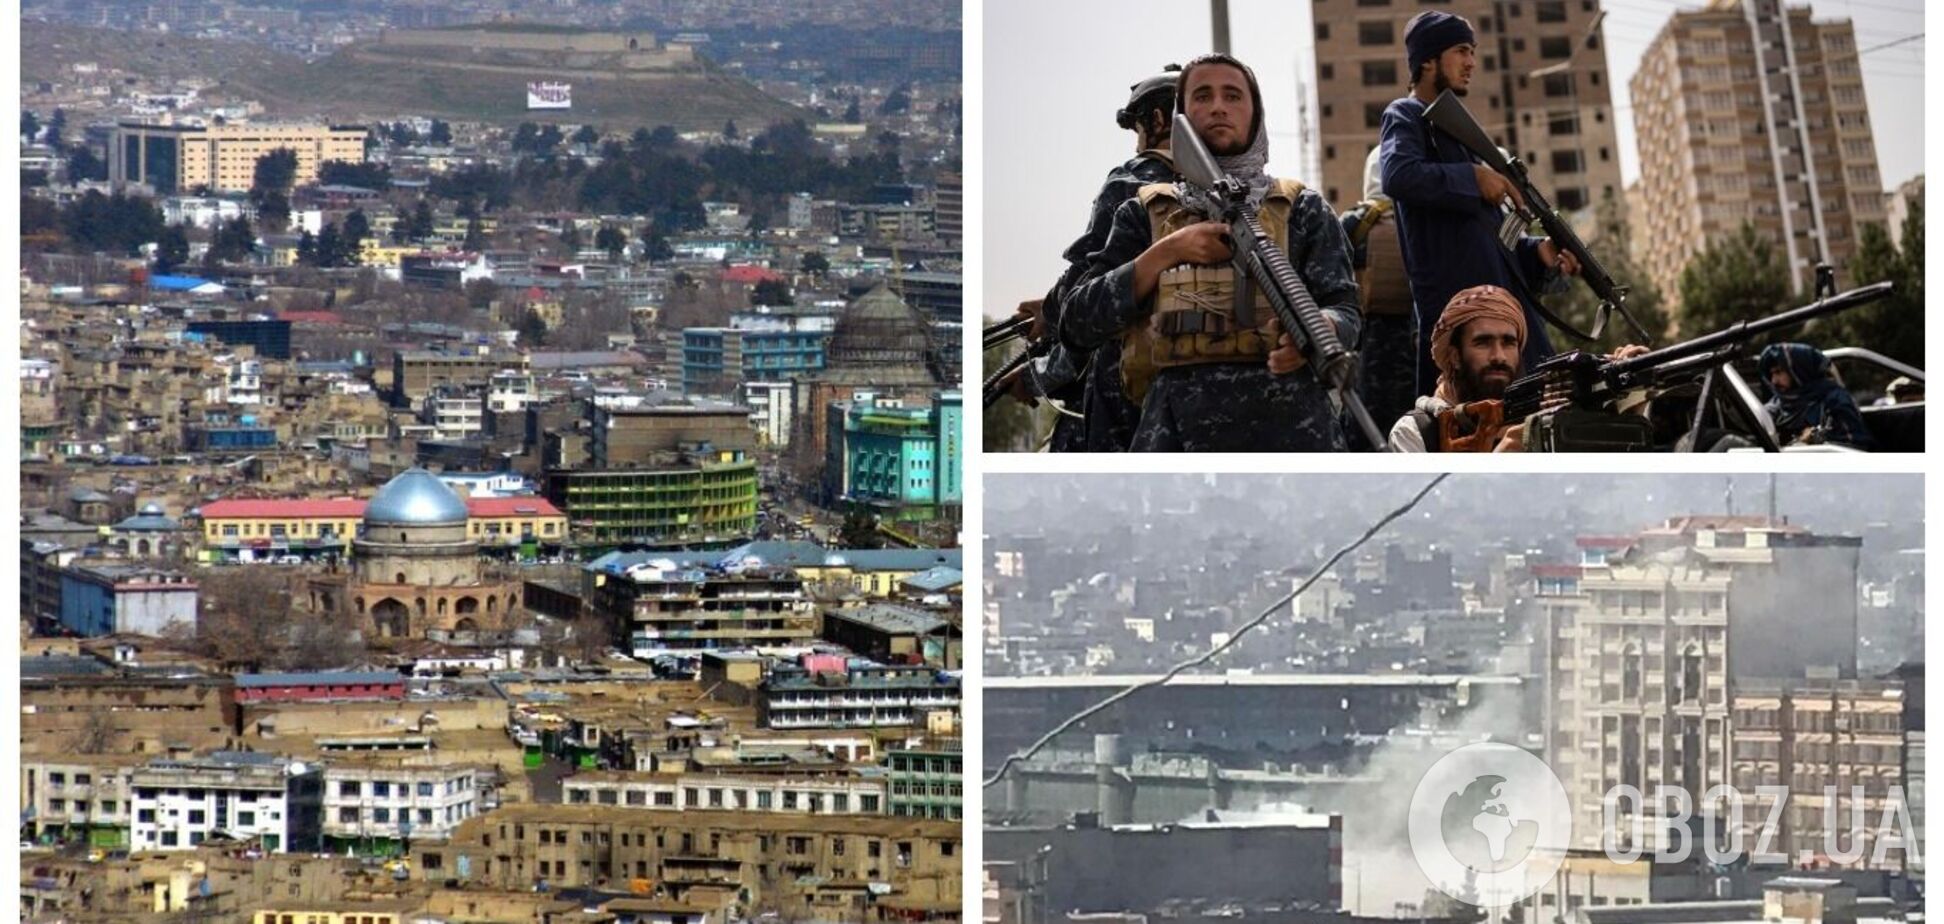 В Кабуле прогремел мощный взрыв, есть пострадавшие. Фото